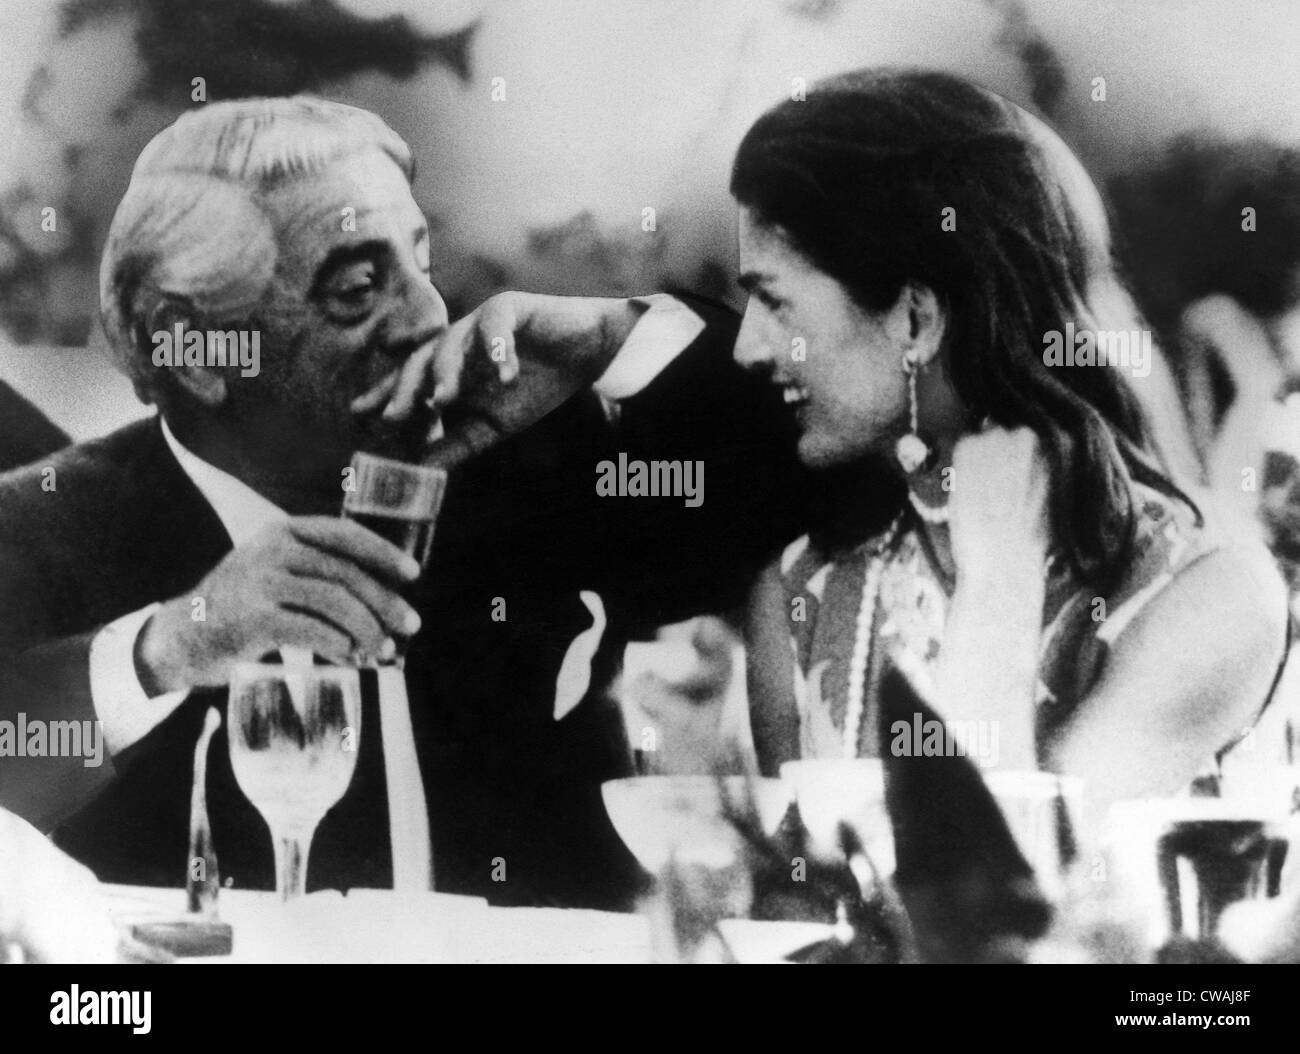 Aristotle Onassis, ehemalige First Lady Jacqueline Kennedy Onassis, feiern ihren 40. Geburtstag, Athen, Griechenland. Juli Stockfoto